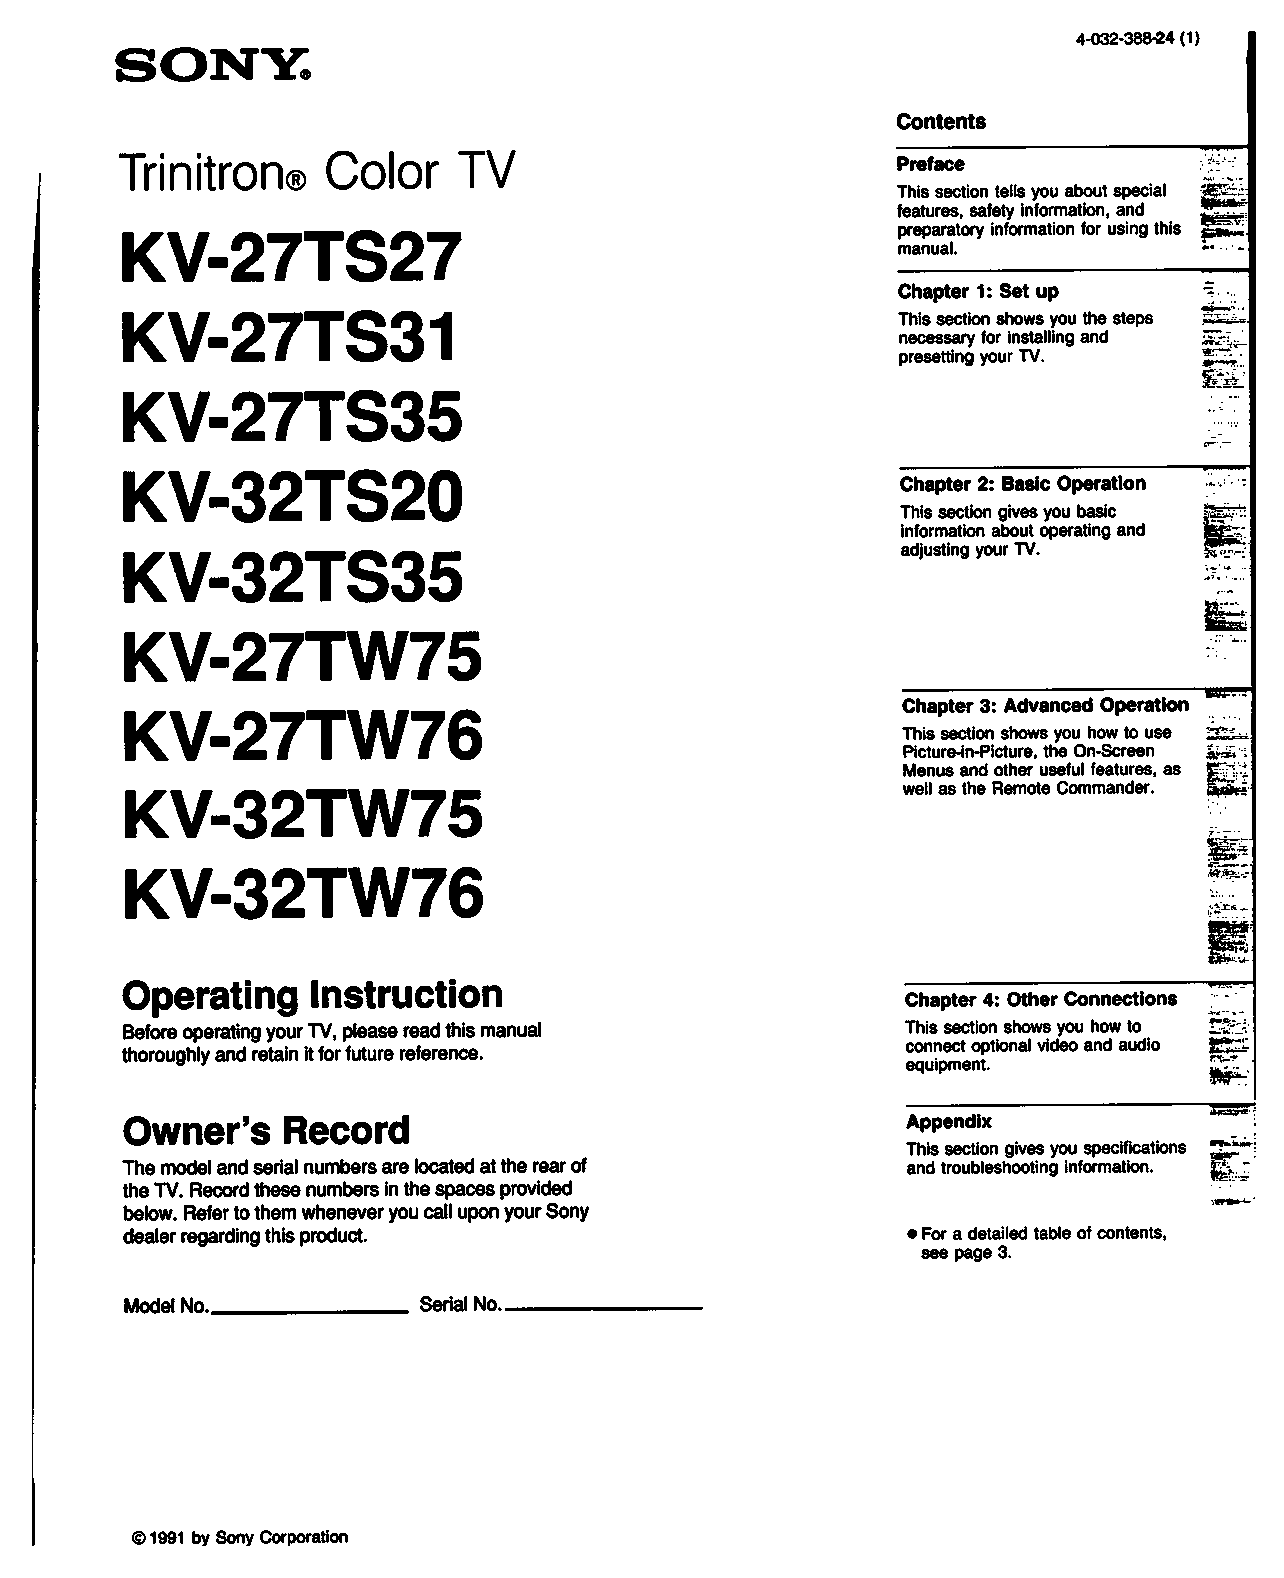 Sony KV-27TW76, KV-27TW75, KV-27TS35, KV-27TS27, KV-27TS31 User Manual